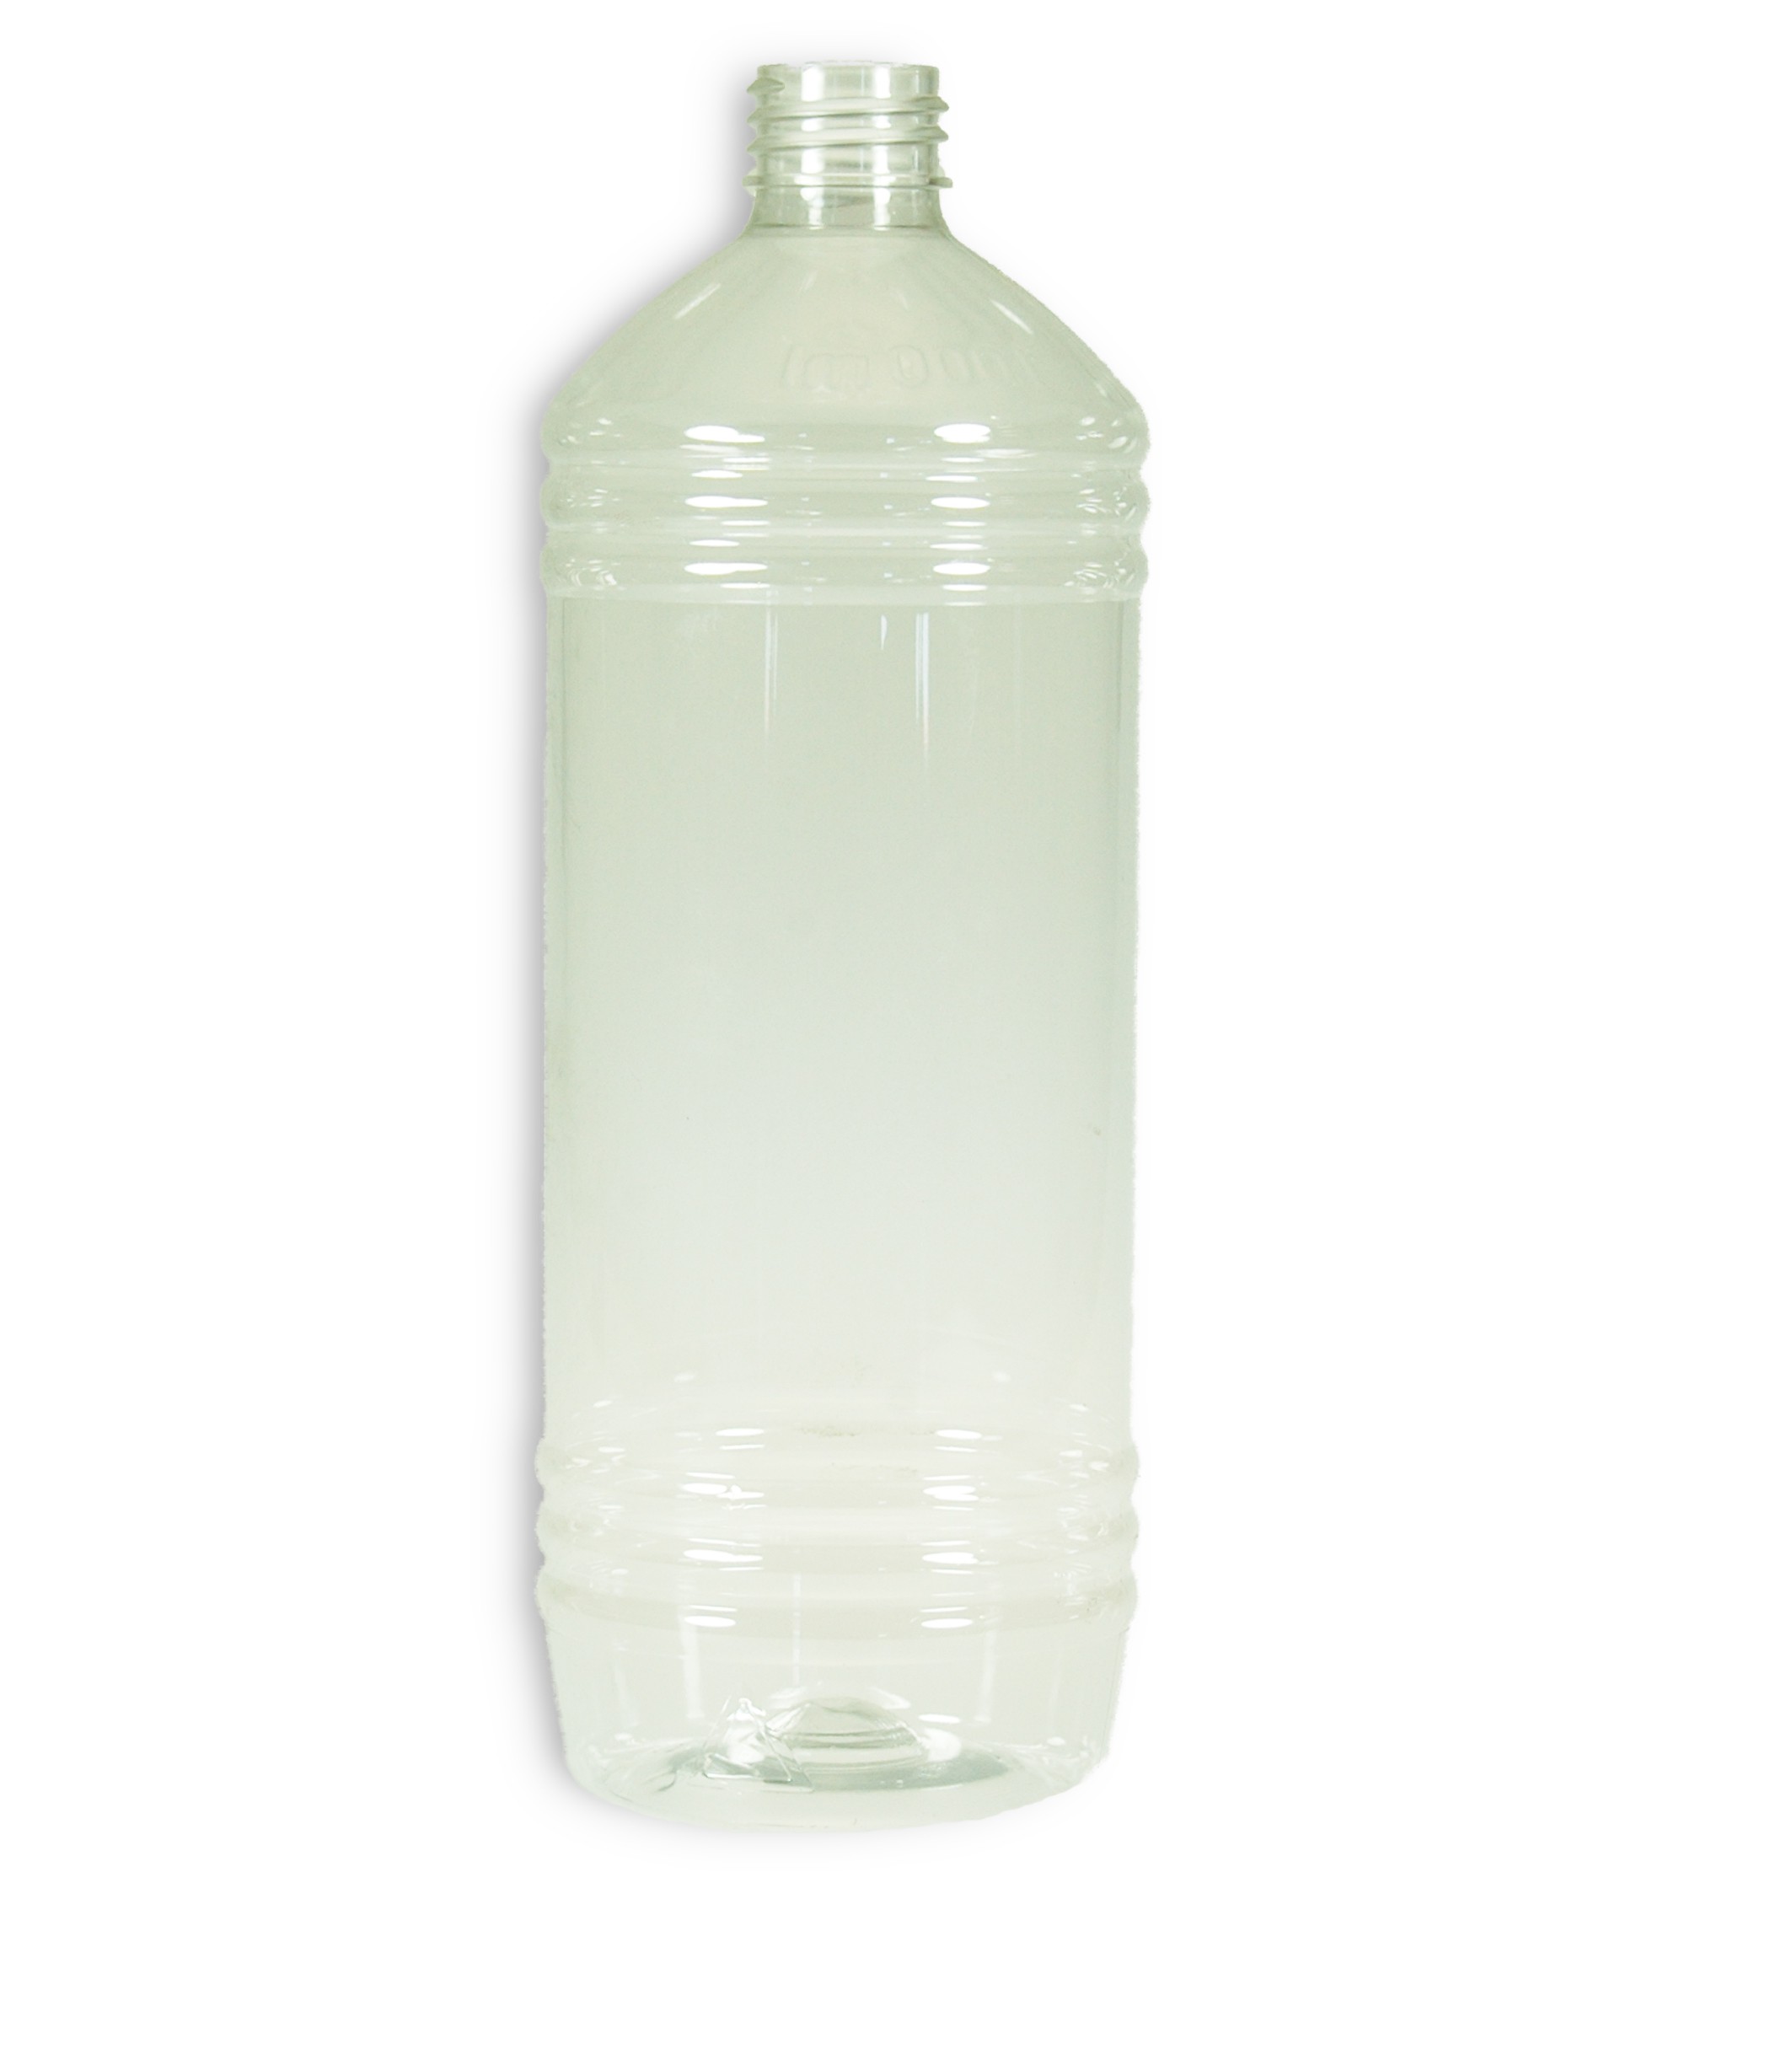 Aap uitlokken is genoeg 1 Liter Pet - Flessen - Verpakkingen Chemicals & Detergents